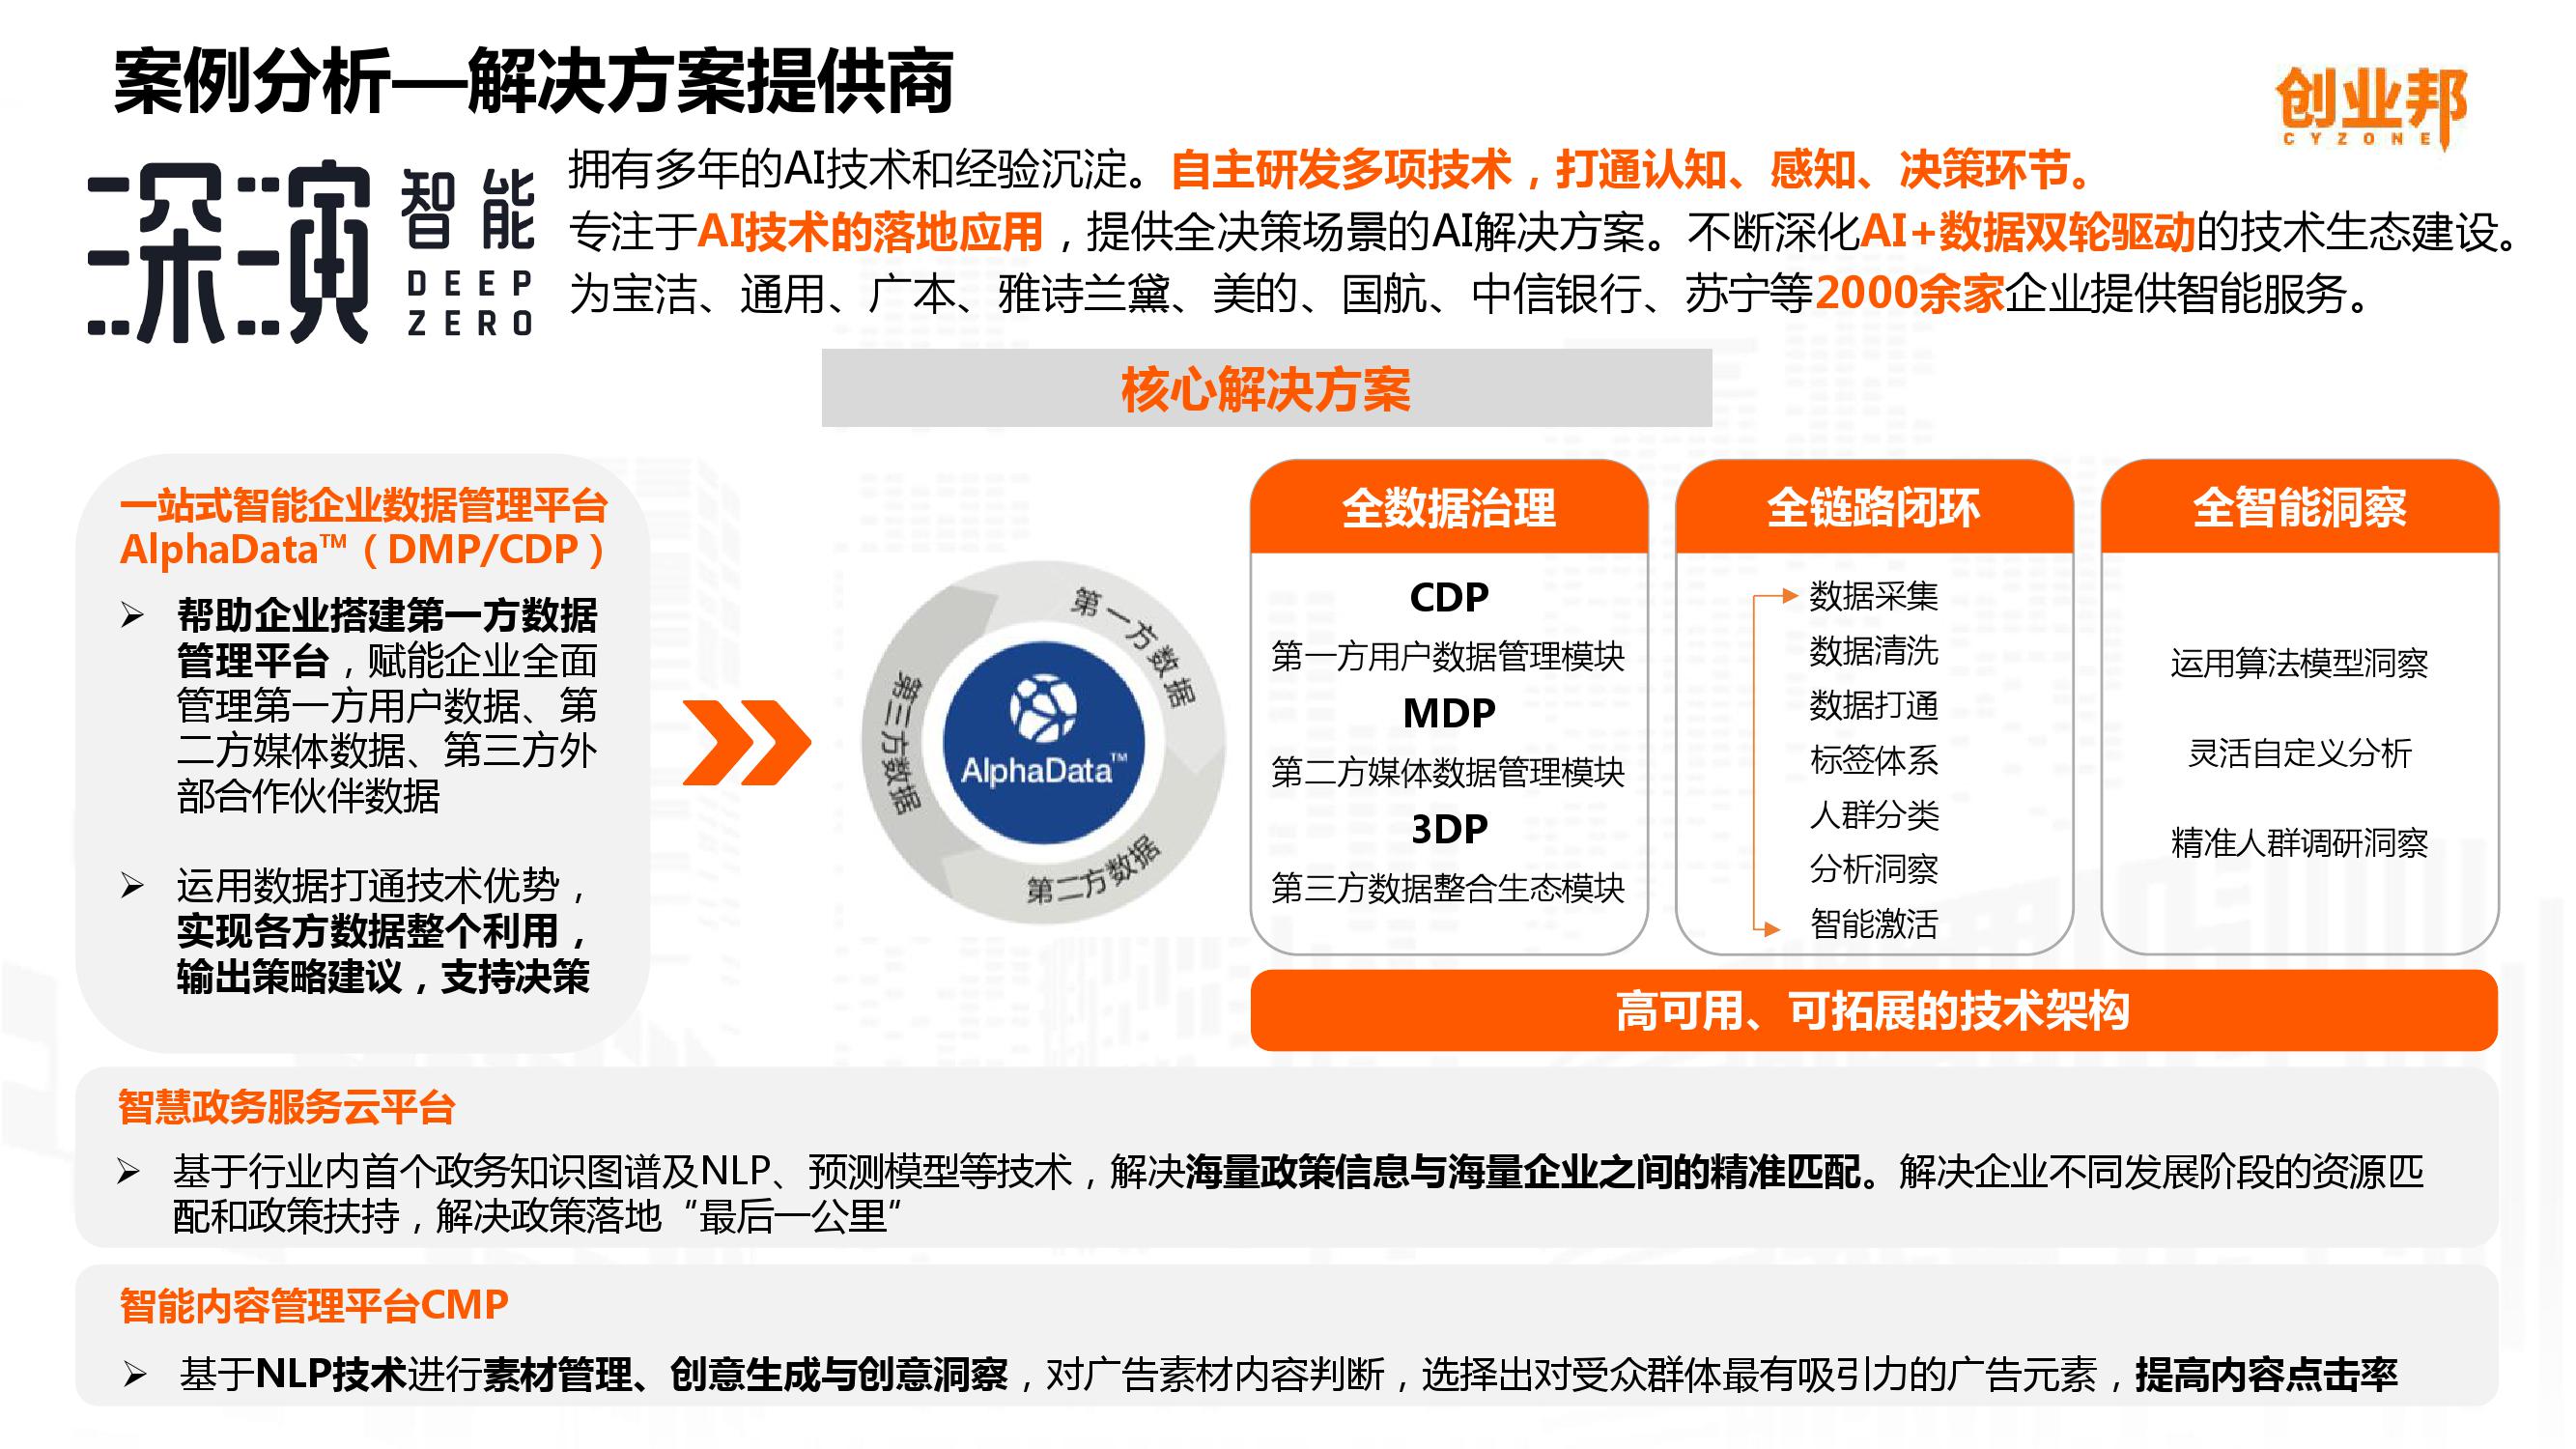 2019中国企业数字化智能化研究报告_000037-3